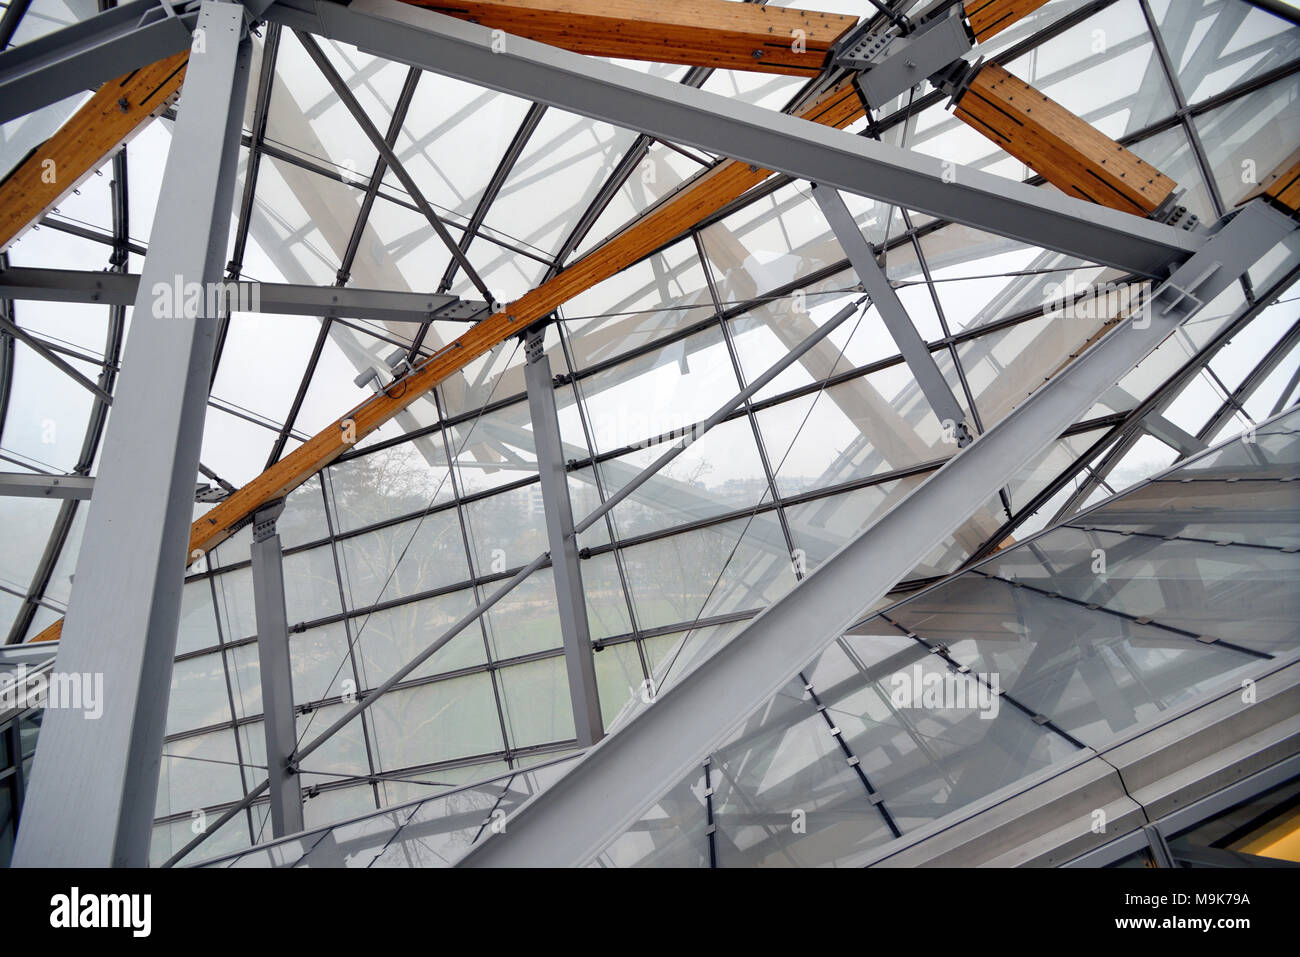 Toit en verre et structure du toit de la fondation Louis Vuitton Art Museum & Cultural Center (2006-14) conçu par Frank Gehry, Paris, France Banque D'Images